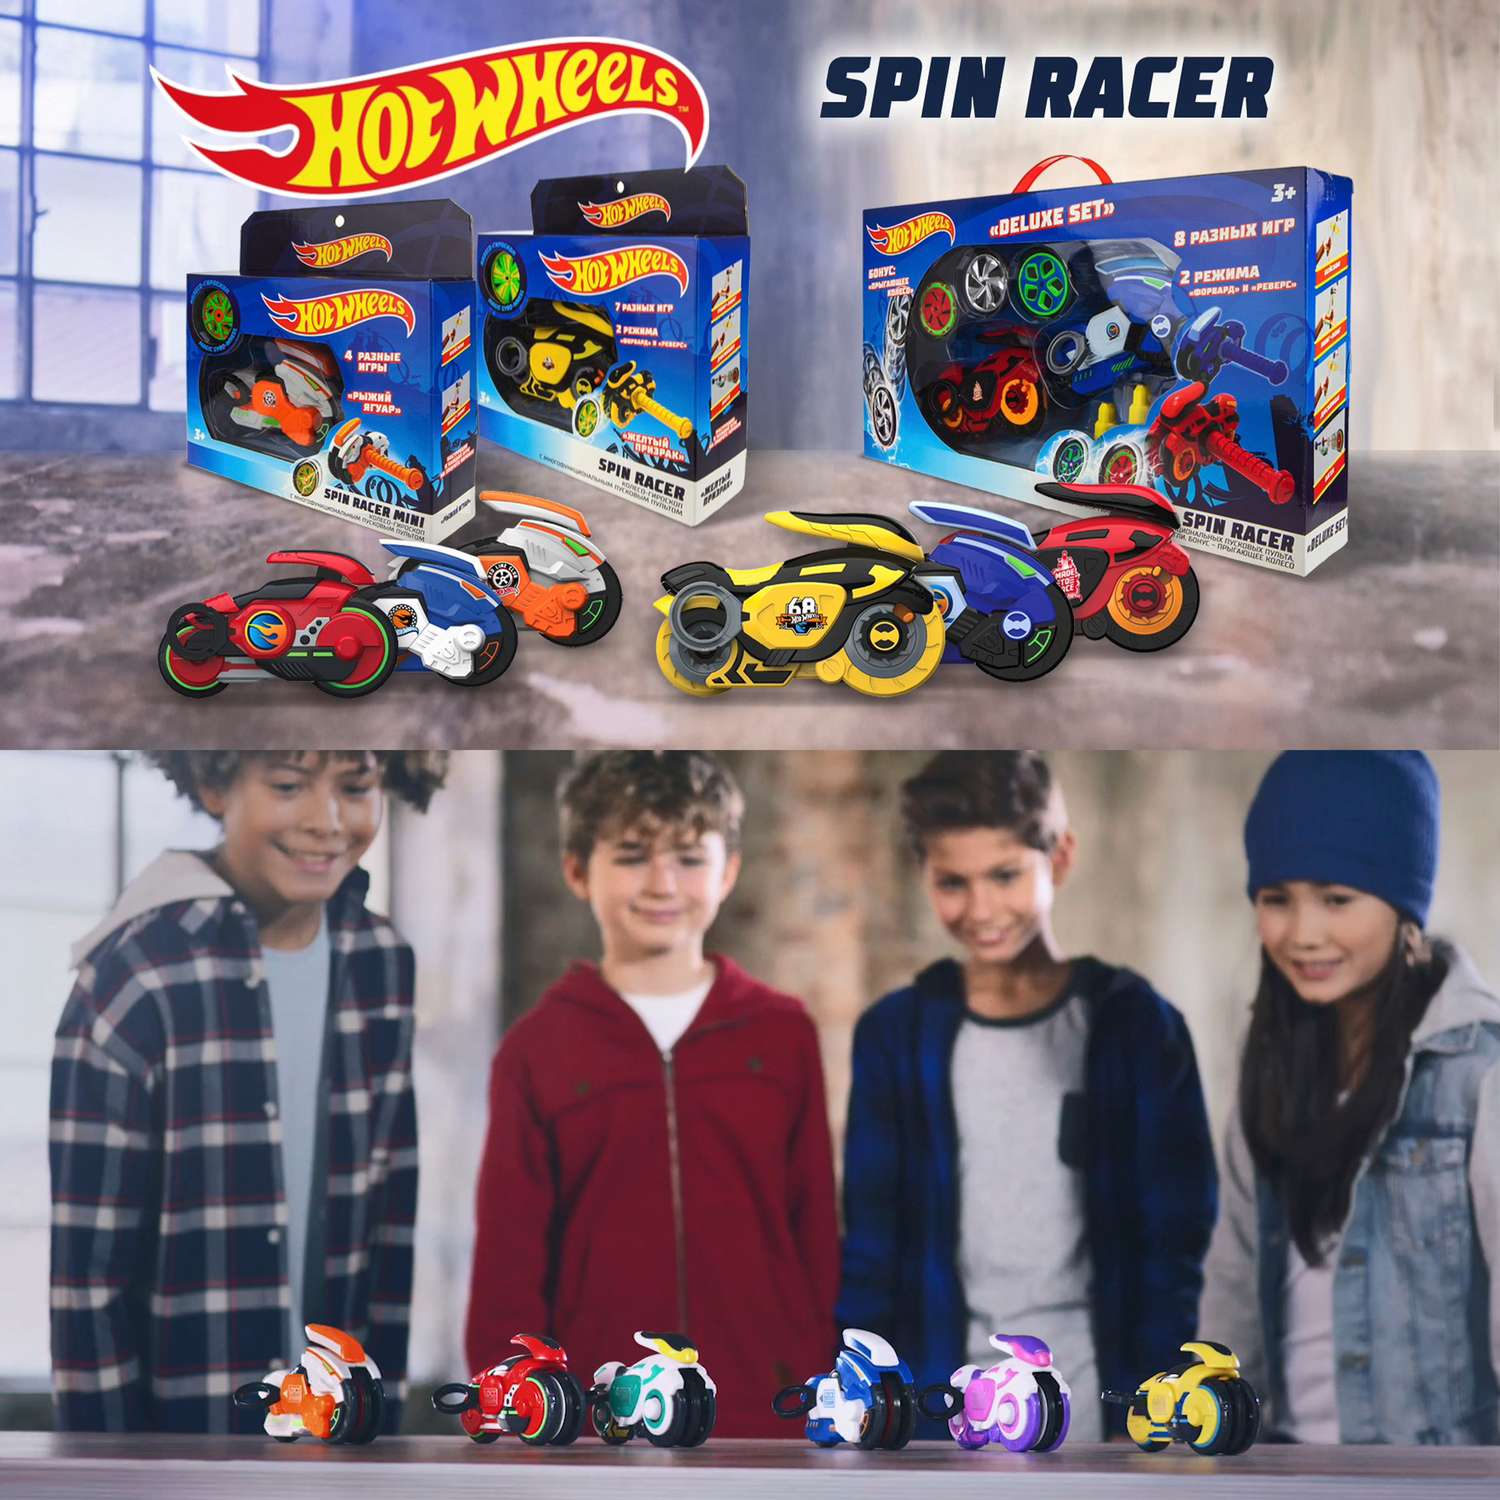 Игровой набор Hot Wheels Spin Racer Deluxe Set 2 игрушечных мотоцикла с колесами-гироскопами Т19375 - фото 3